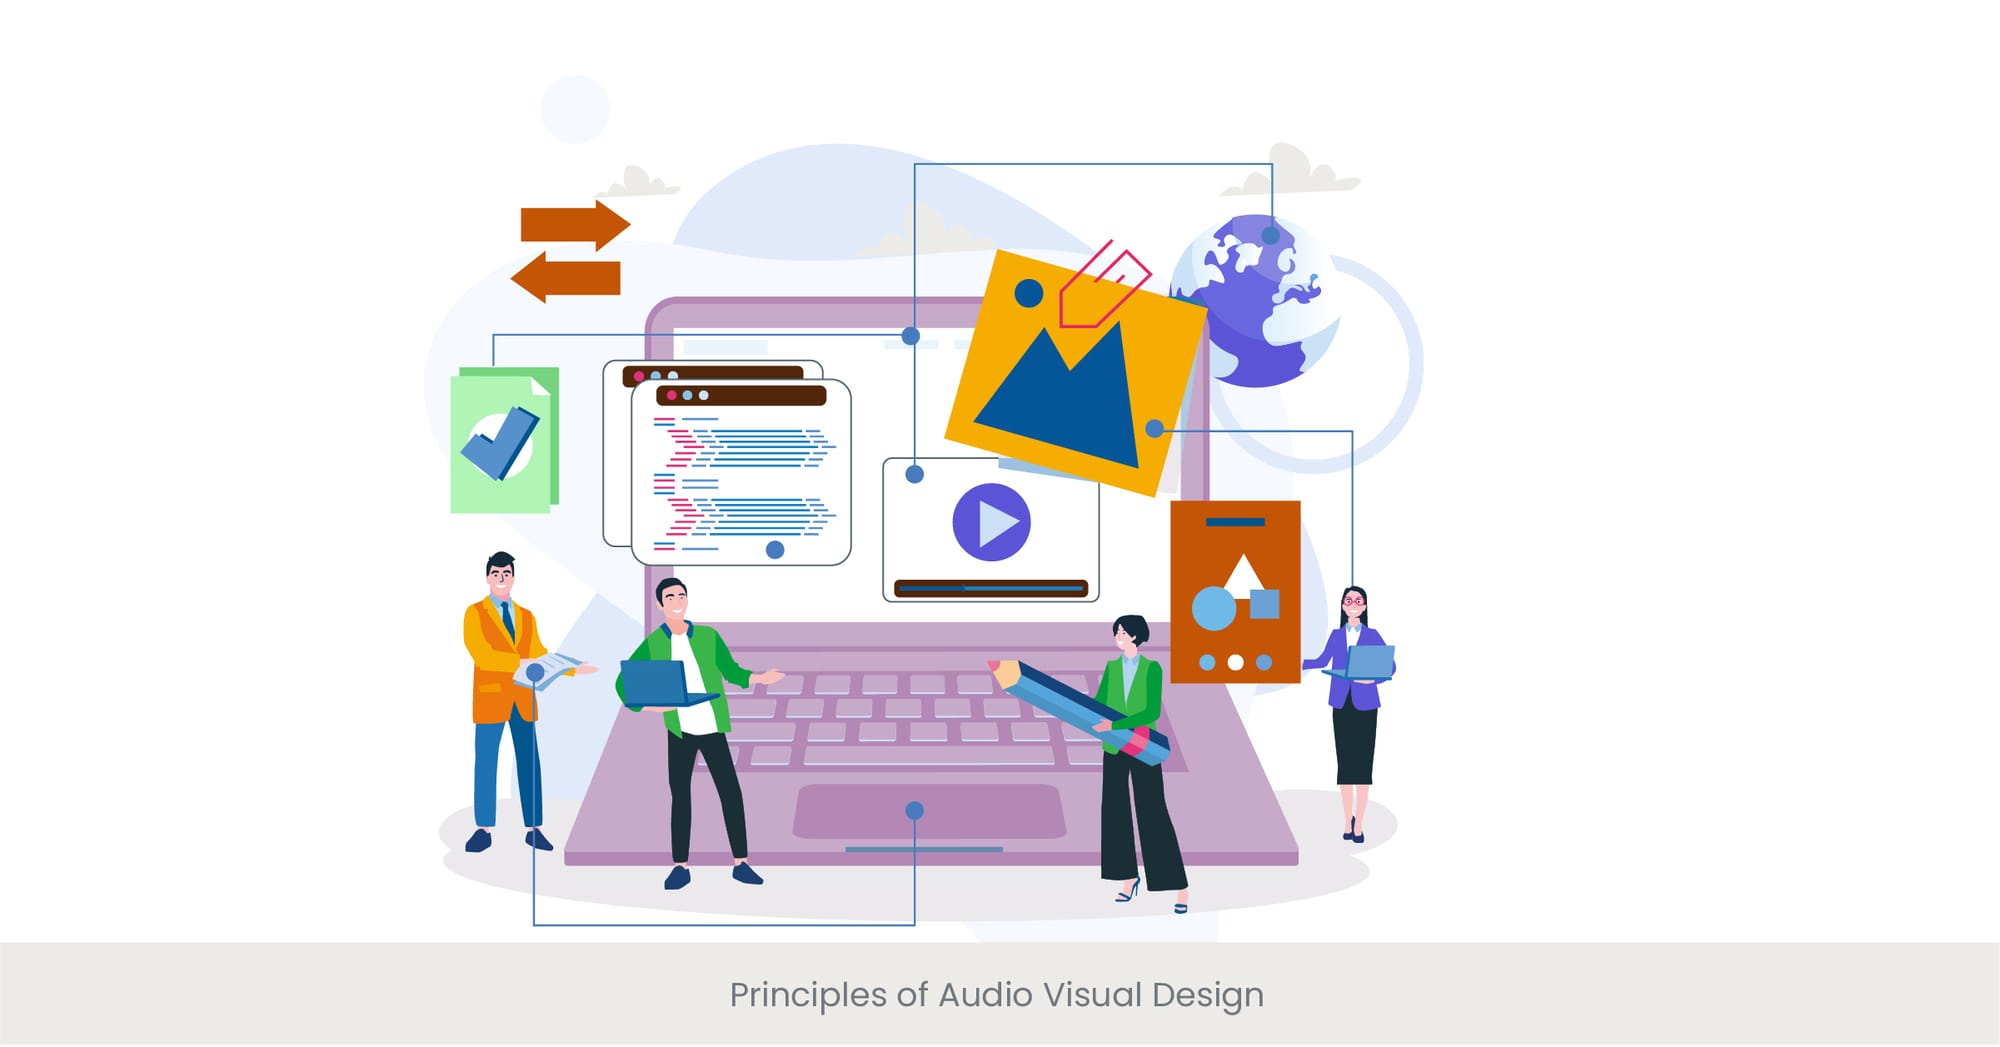 Principles of Audio Visual Design